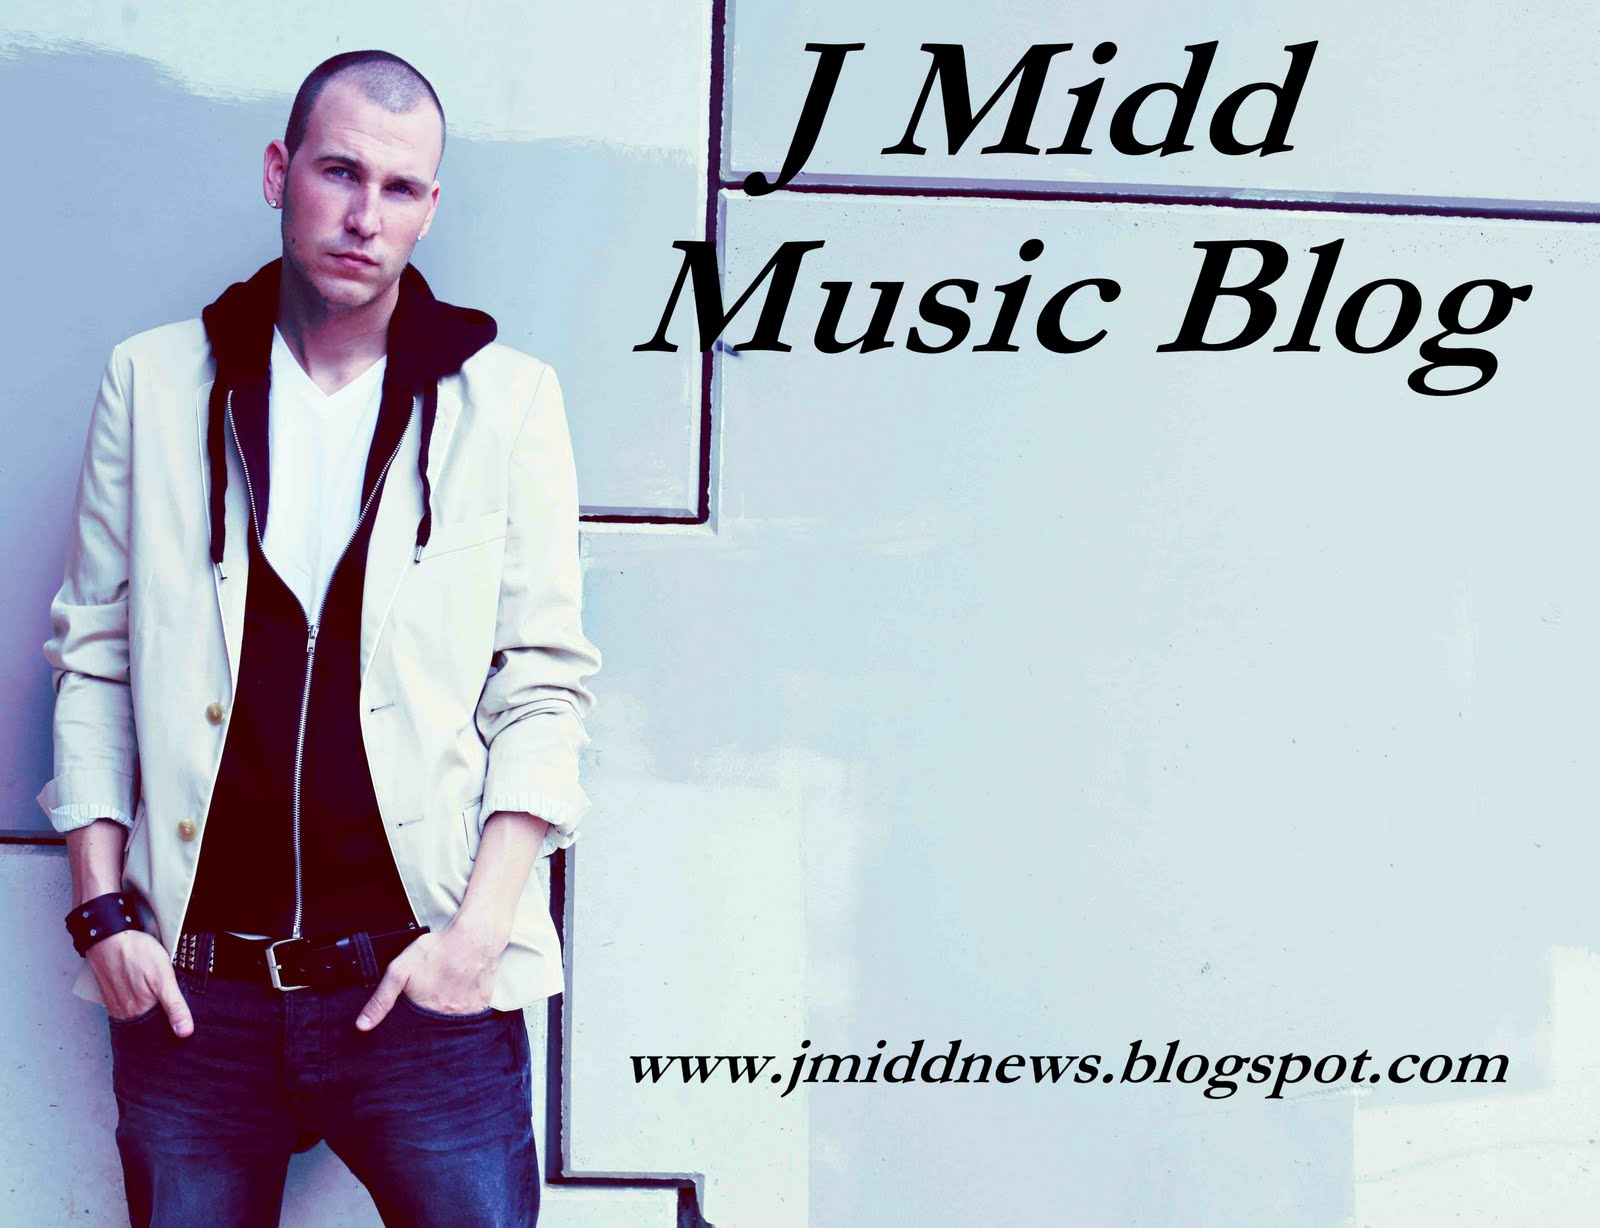 J Midd Music Blog